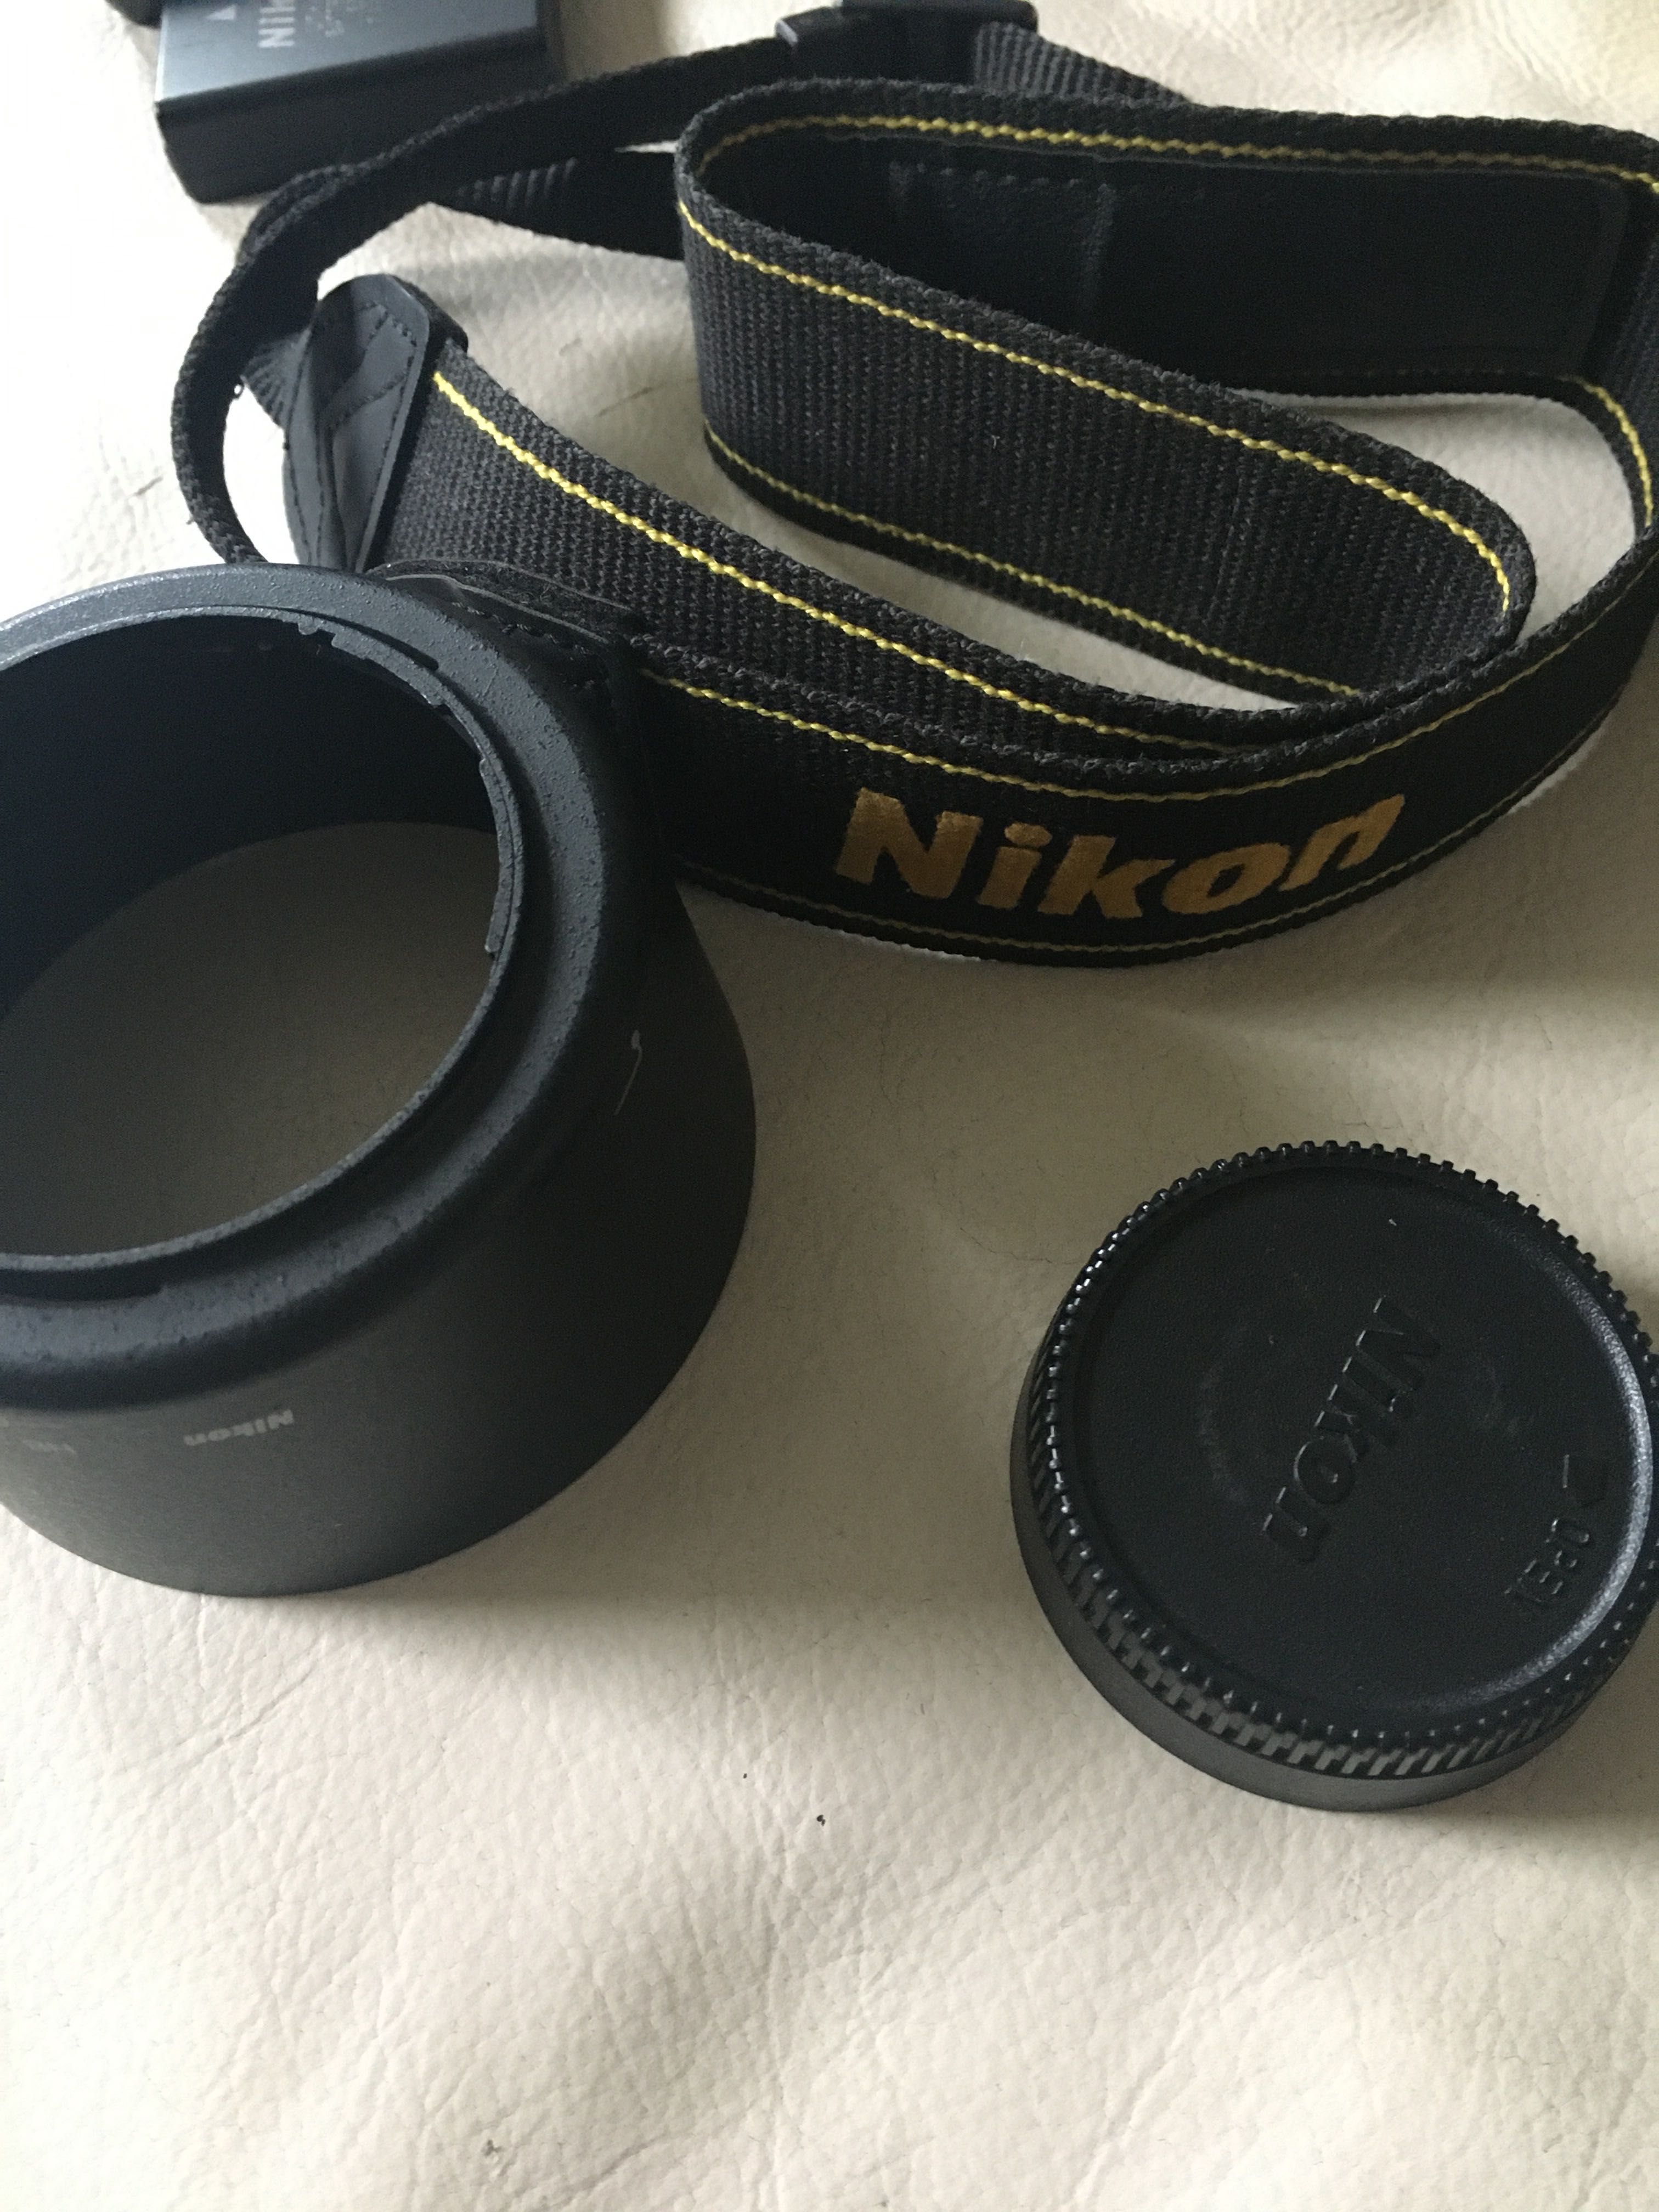 Lustrzanka Nikon d5100 z obiektywem